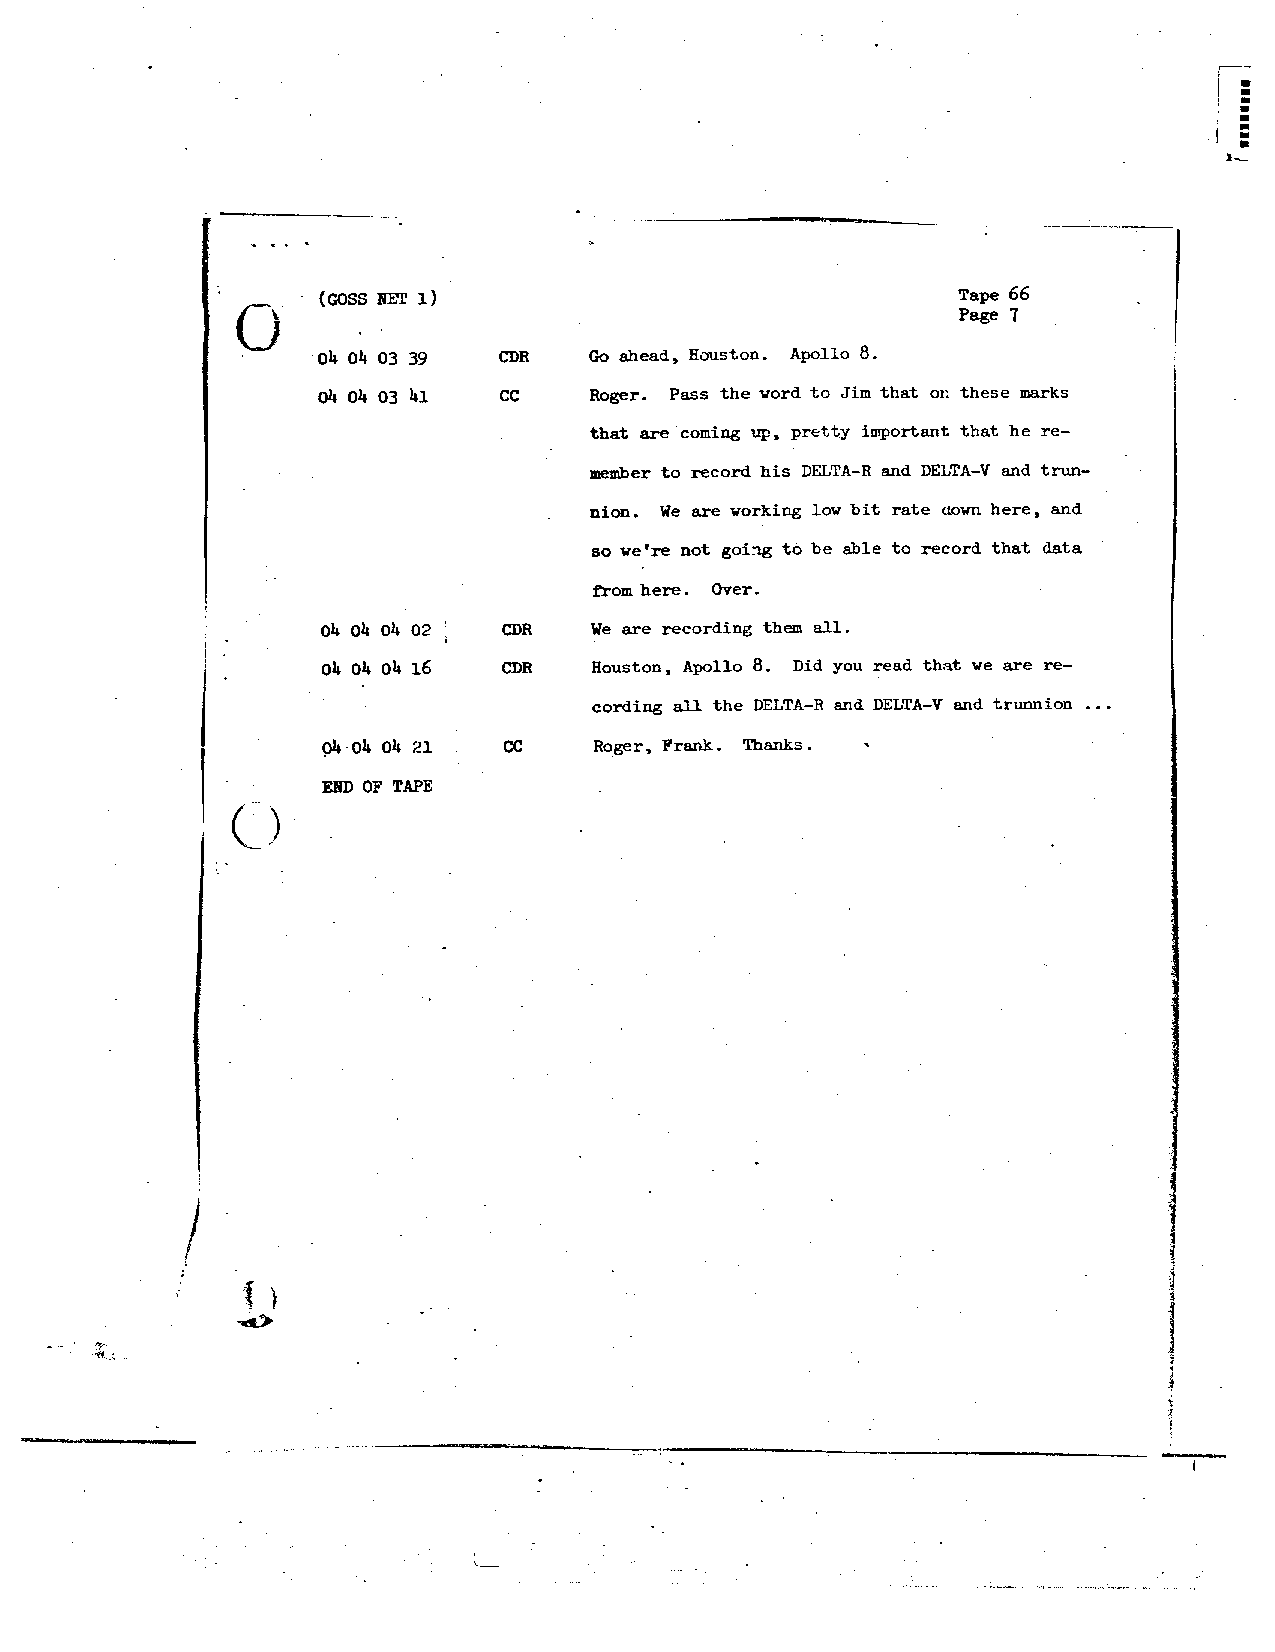 Page 526 of Apollo 8’s original transcript